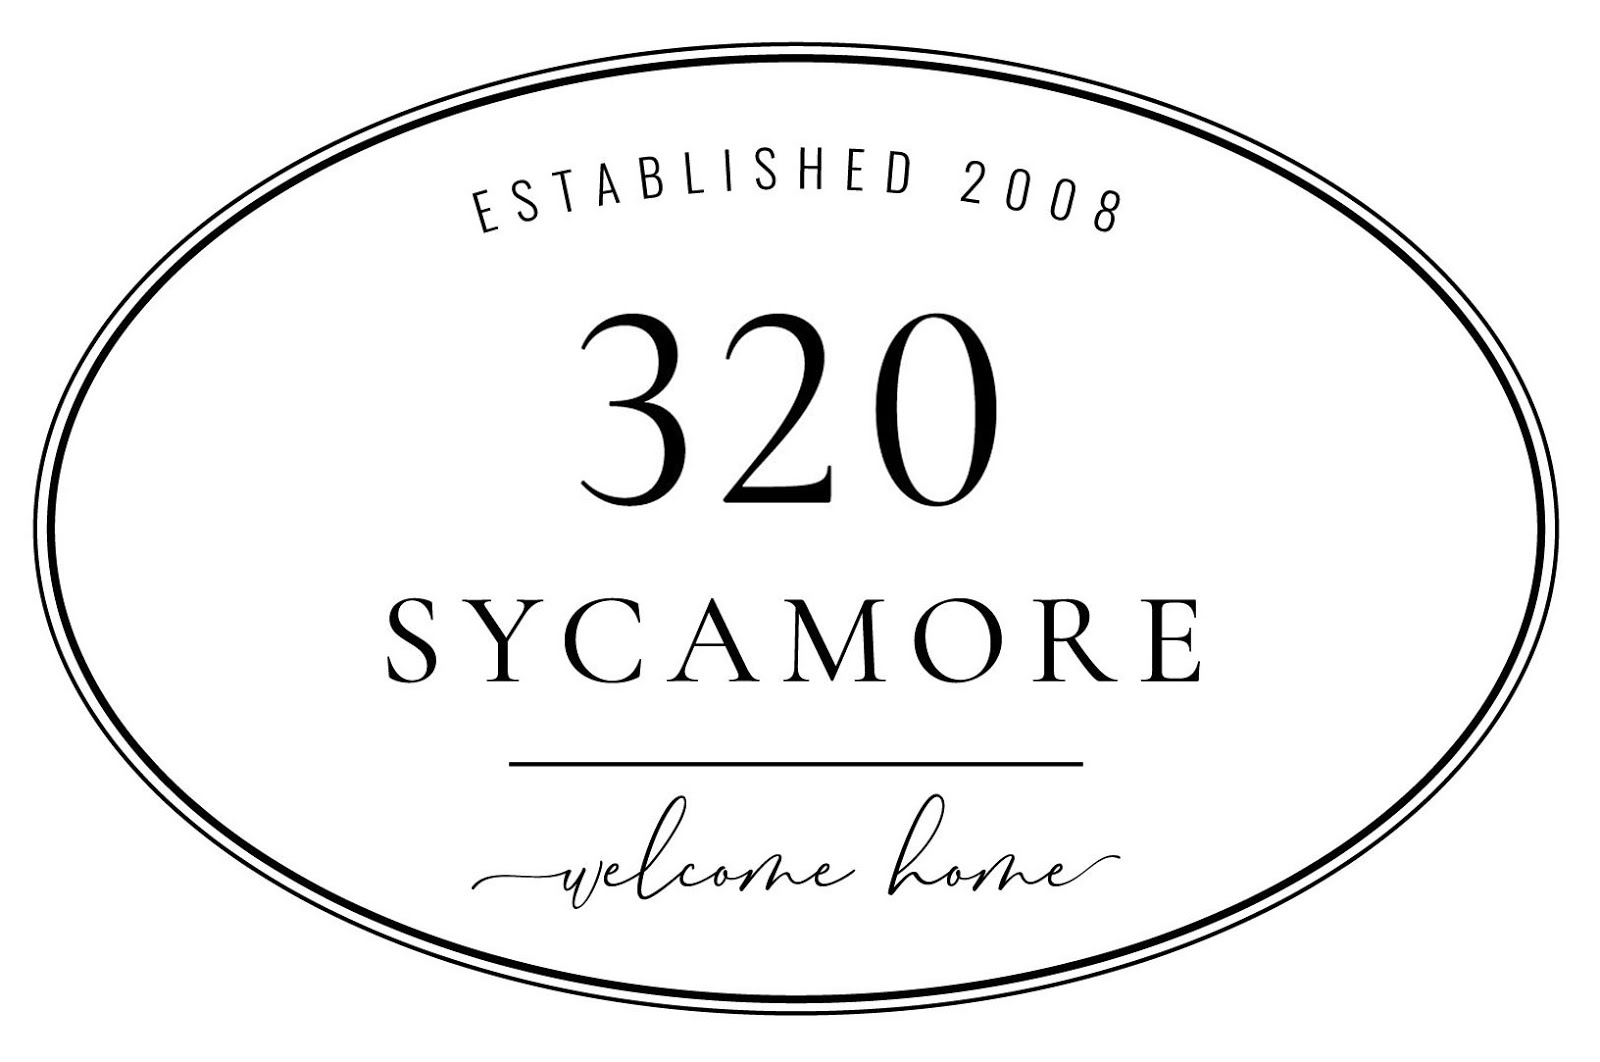 320 * Sycamore